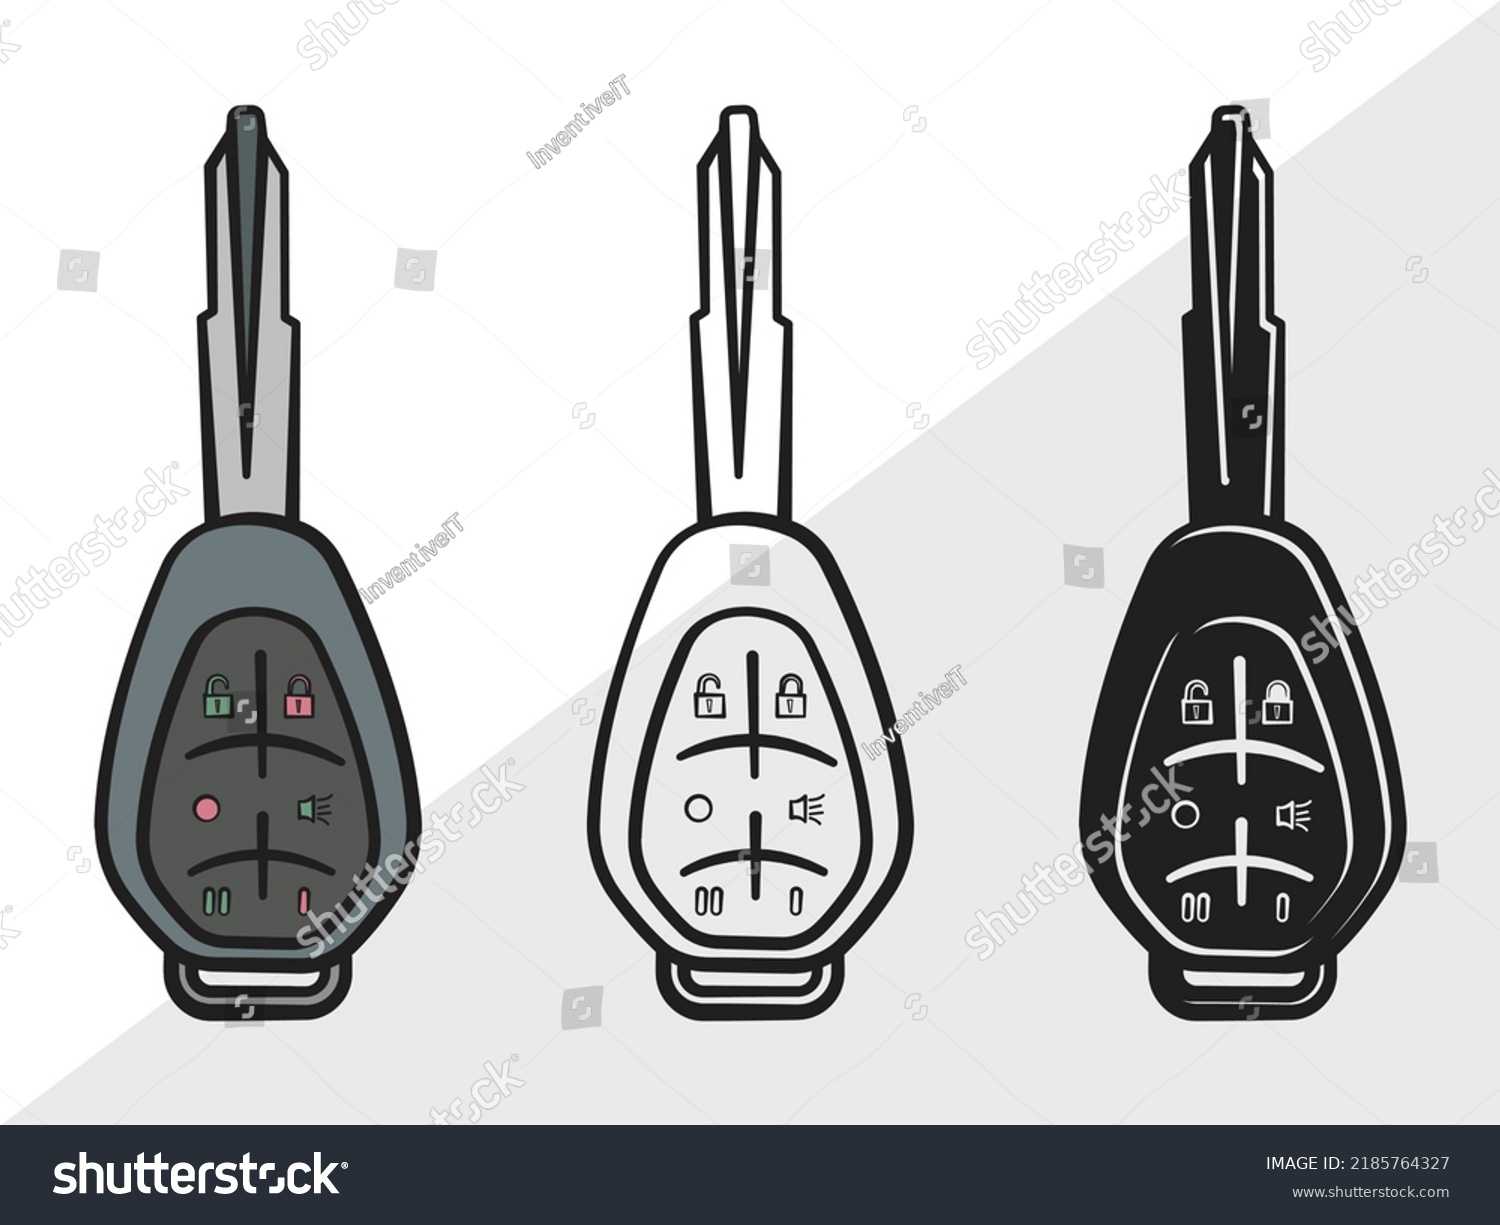 SVG of Car Keys SVG Printable Vector Illustration svg